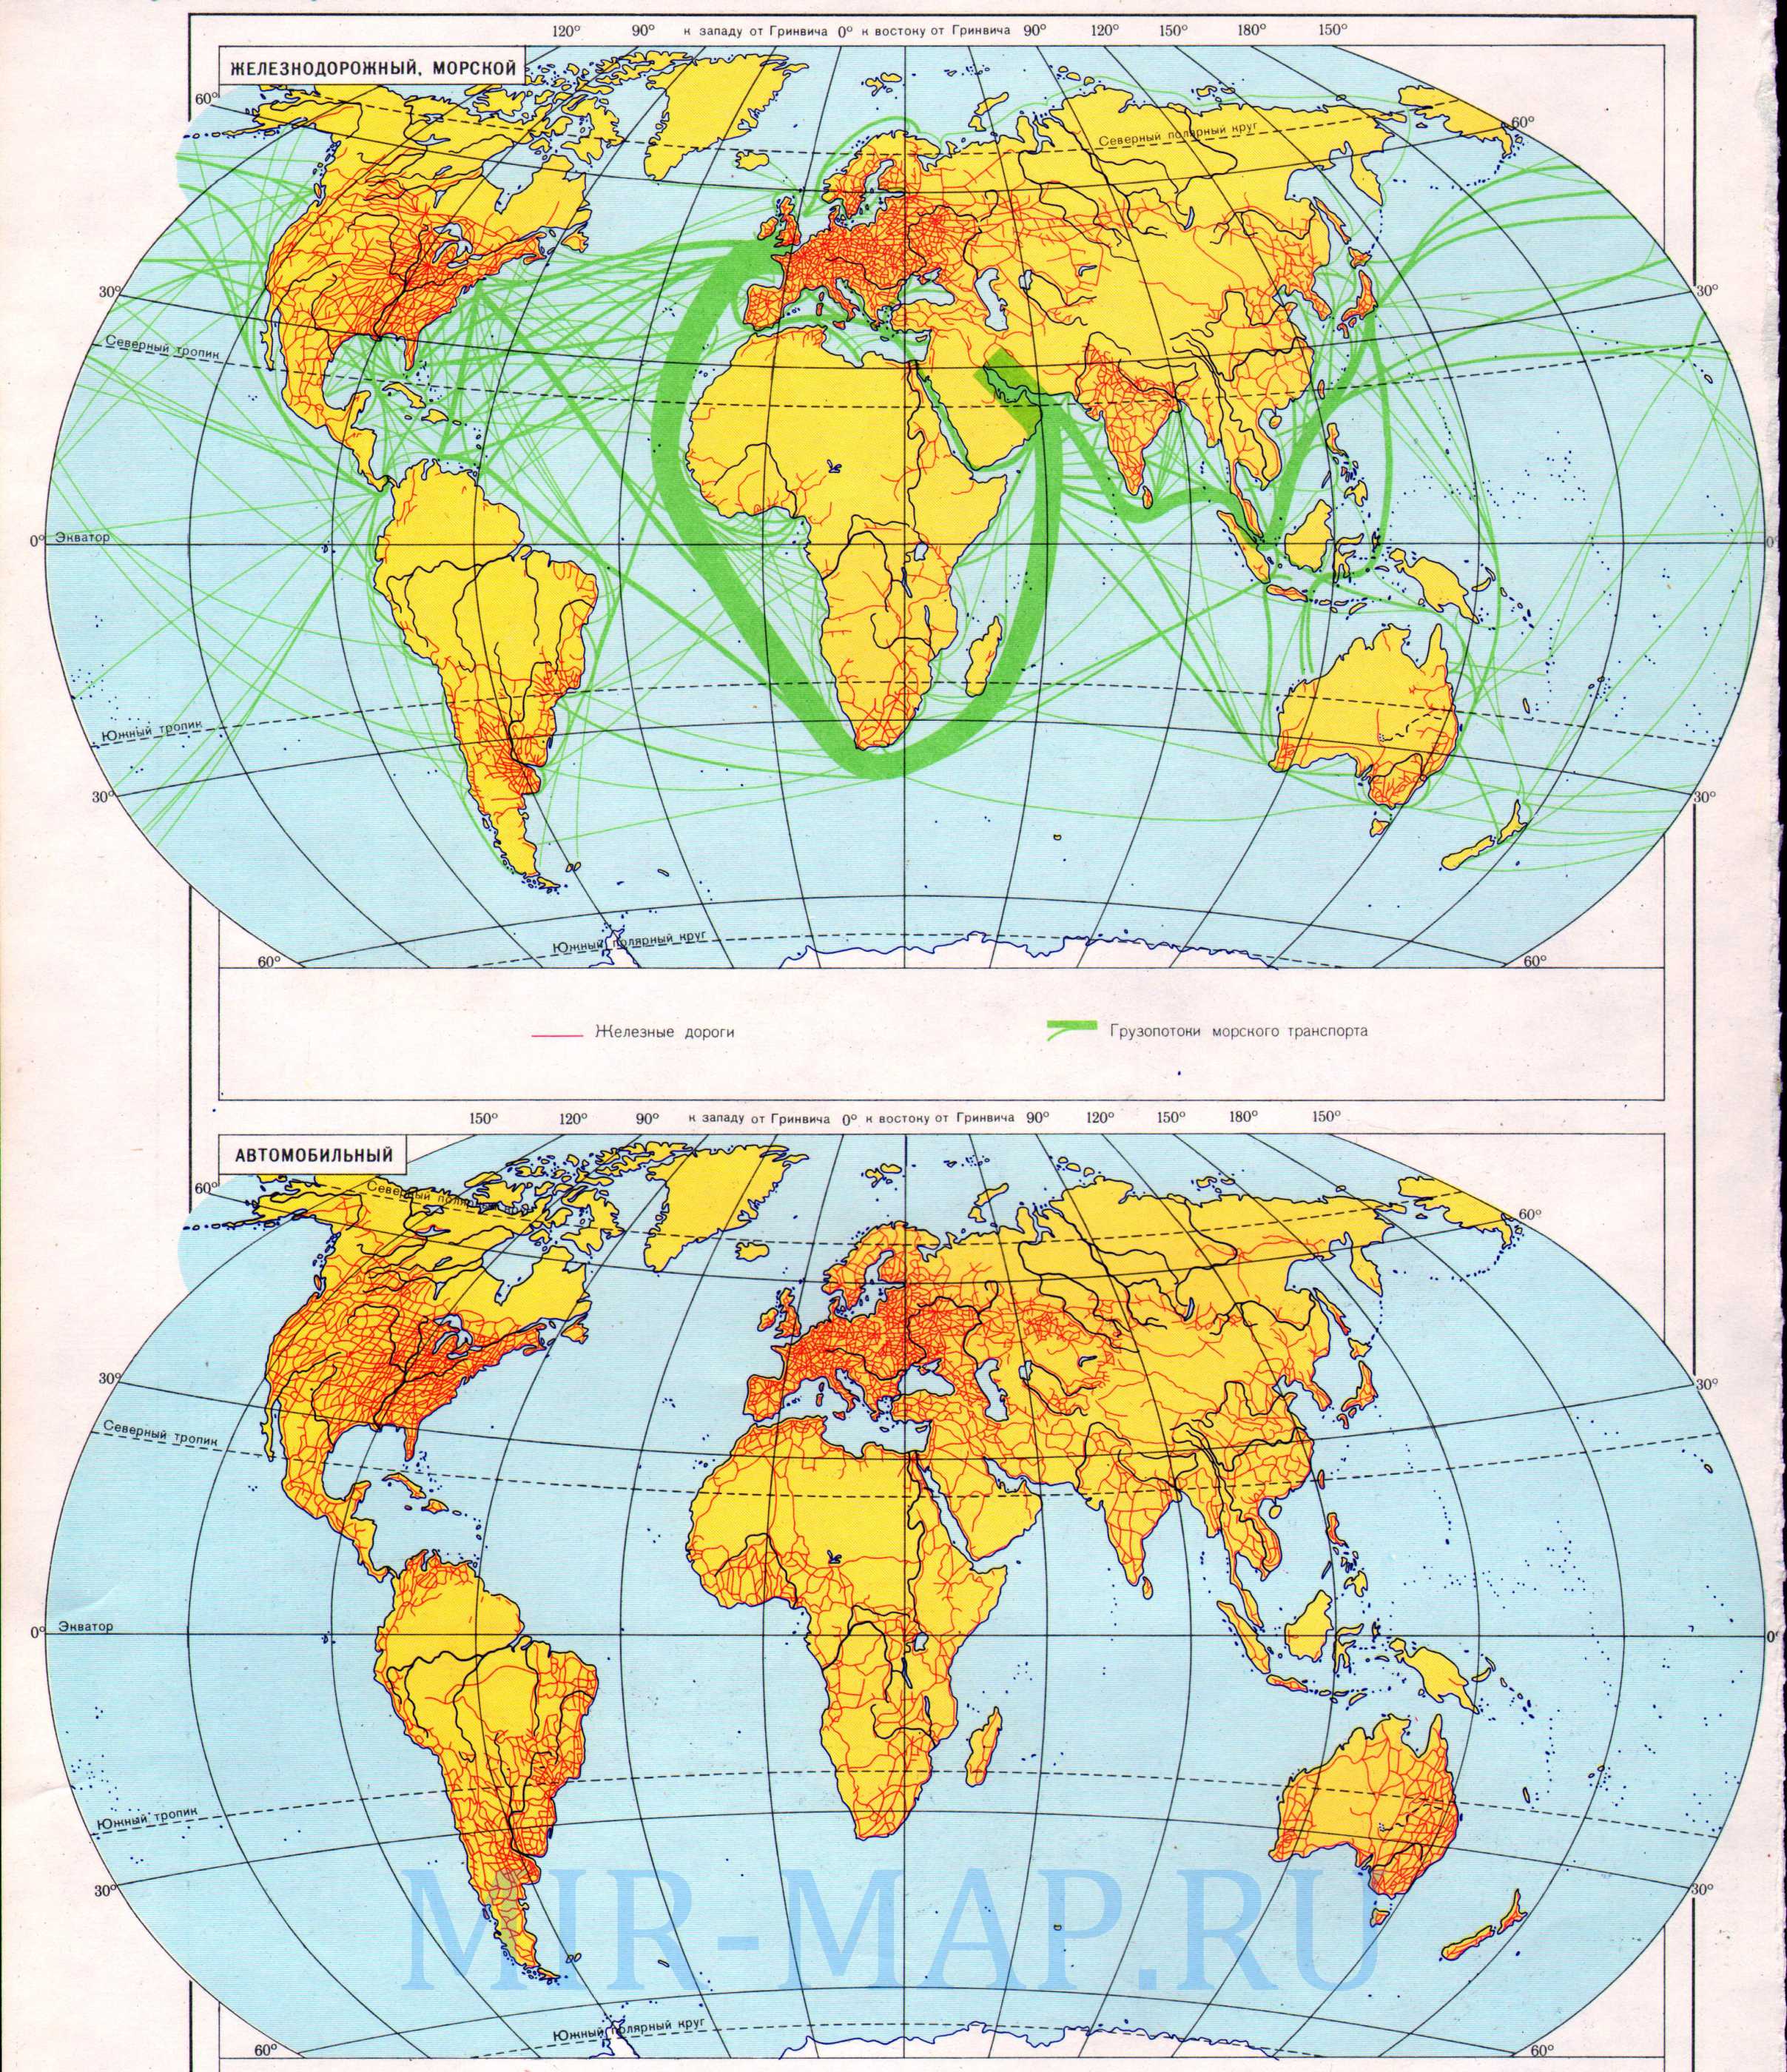 Транспортная карта мира. Карта мировых транспортных перевозок морским, железнодорожным, автомобильным транспортом., A0 - 